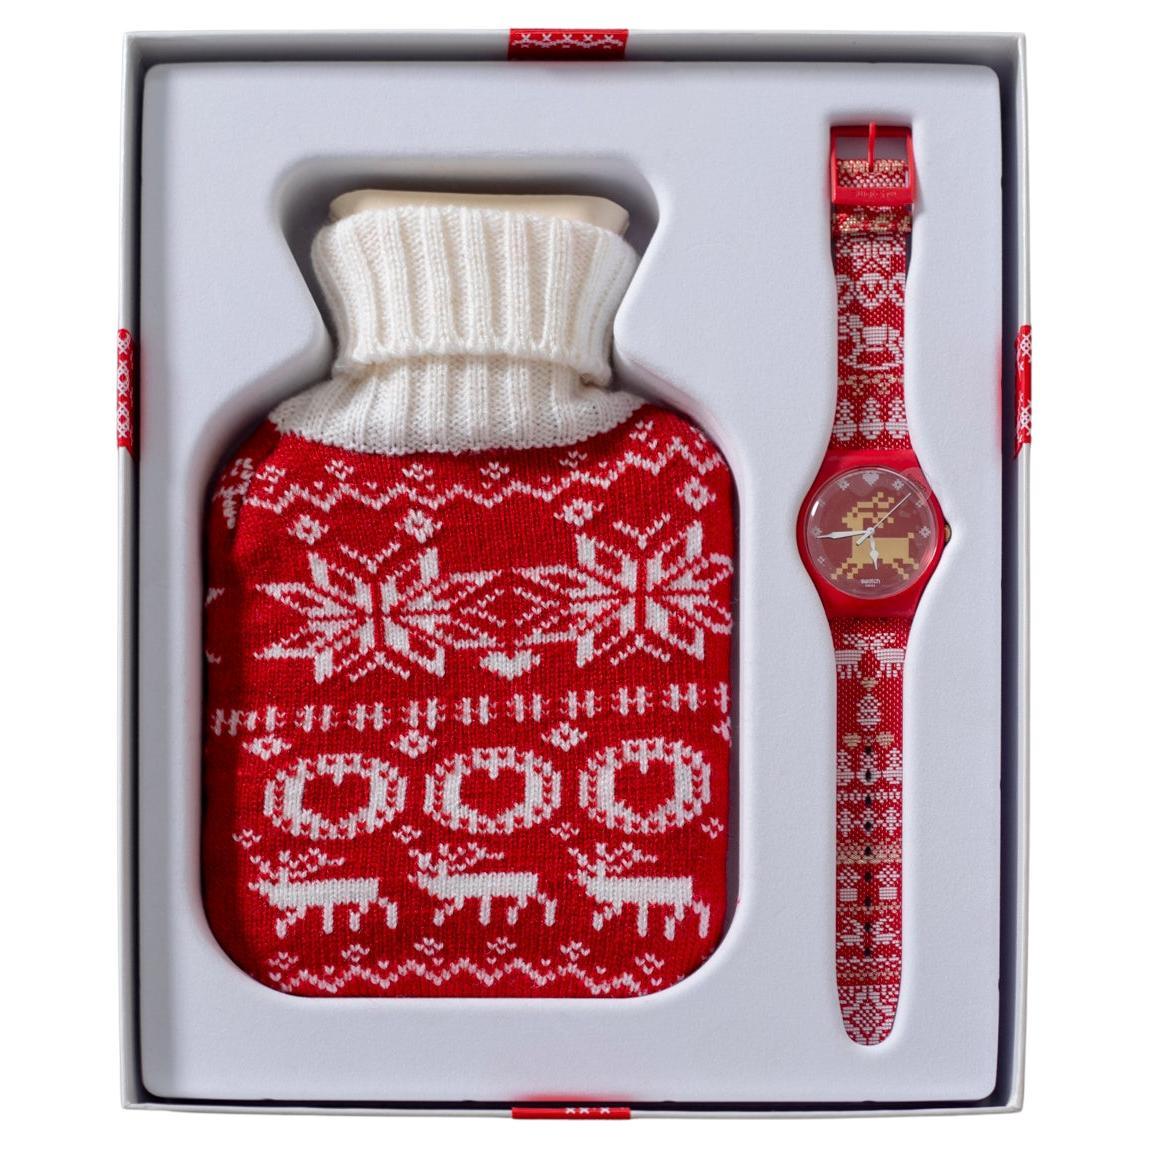 Swatch Red Knit Limitierte Auflage für Weihnachten 2013